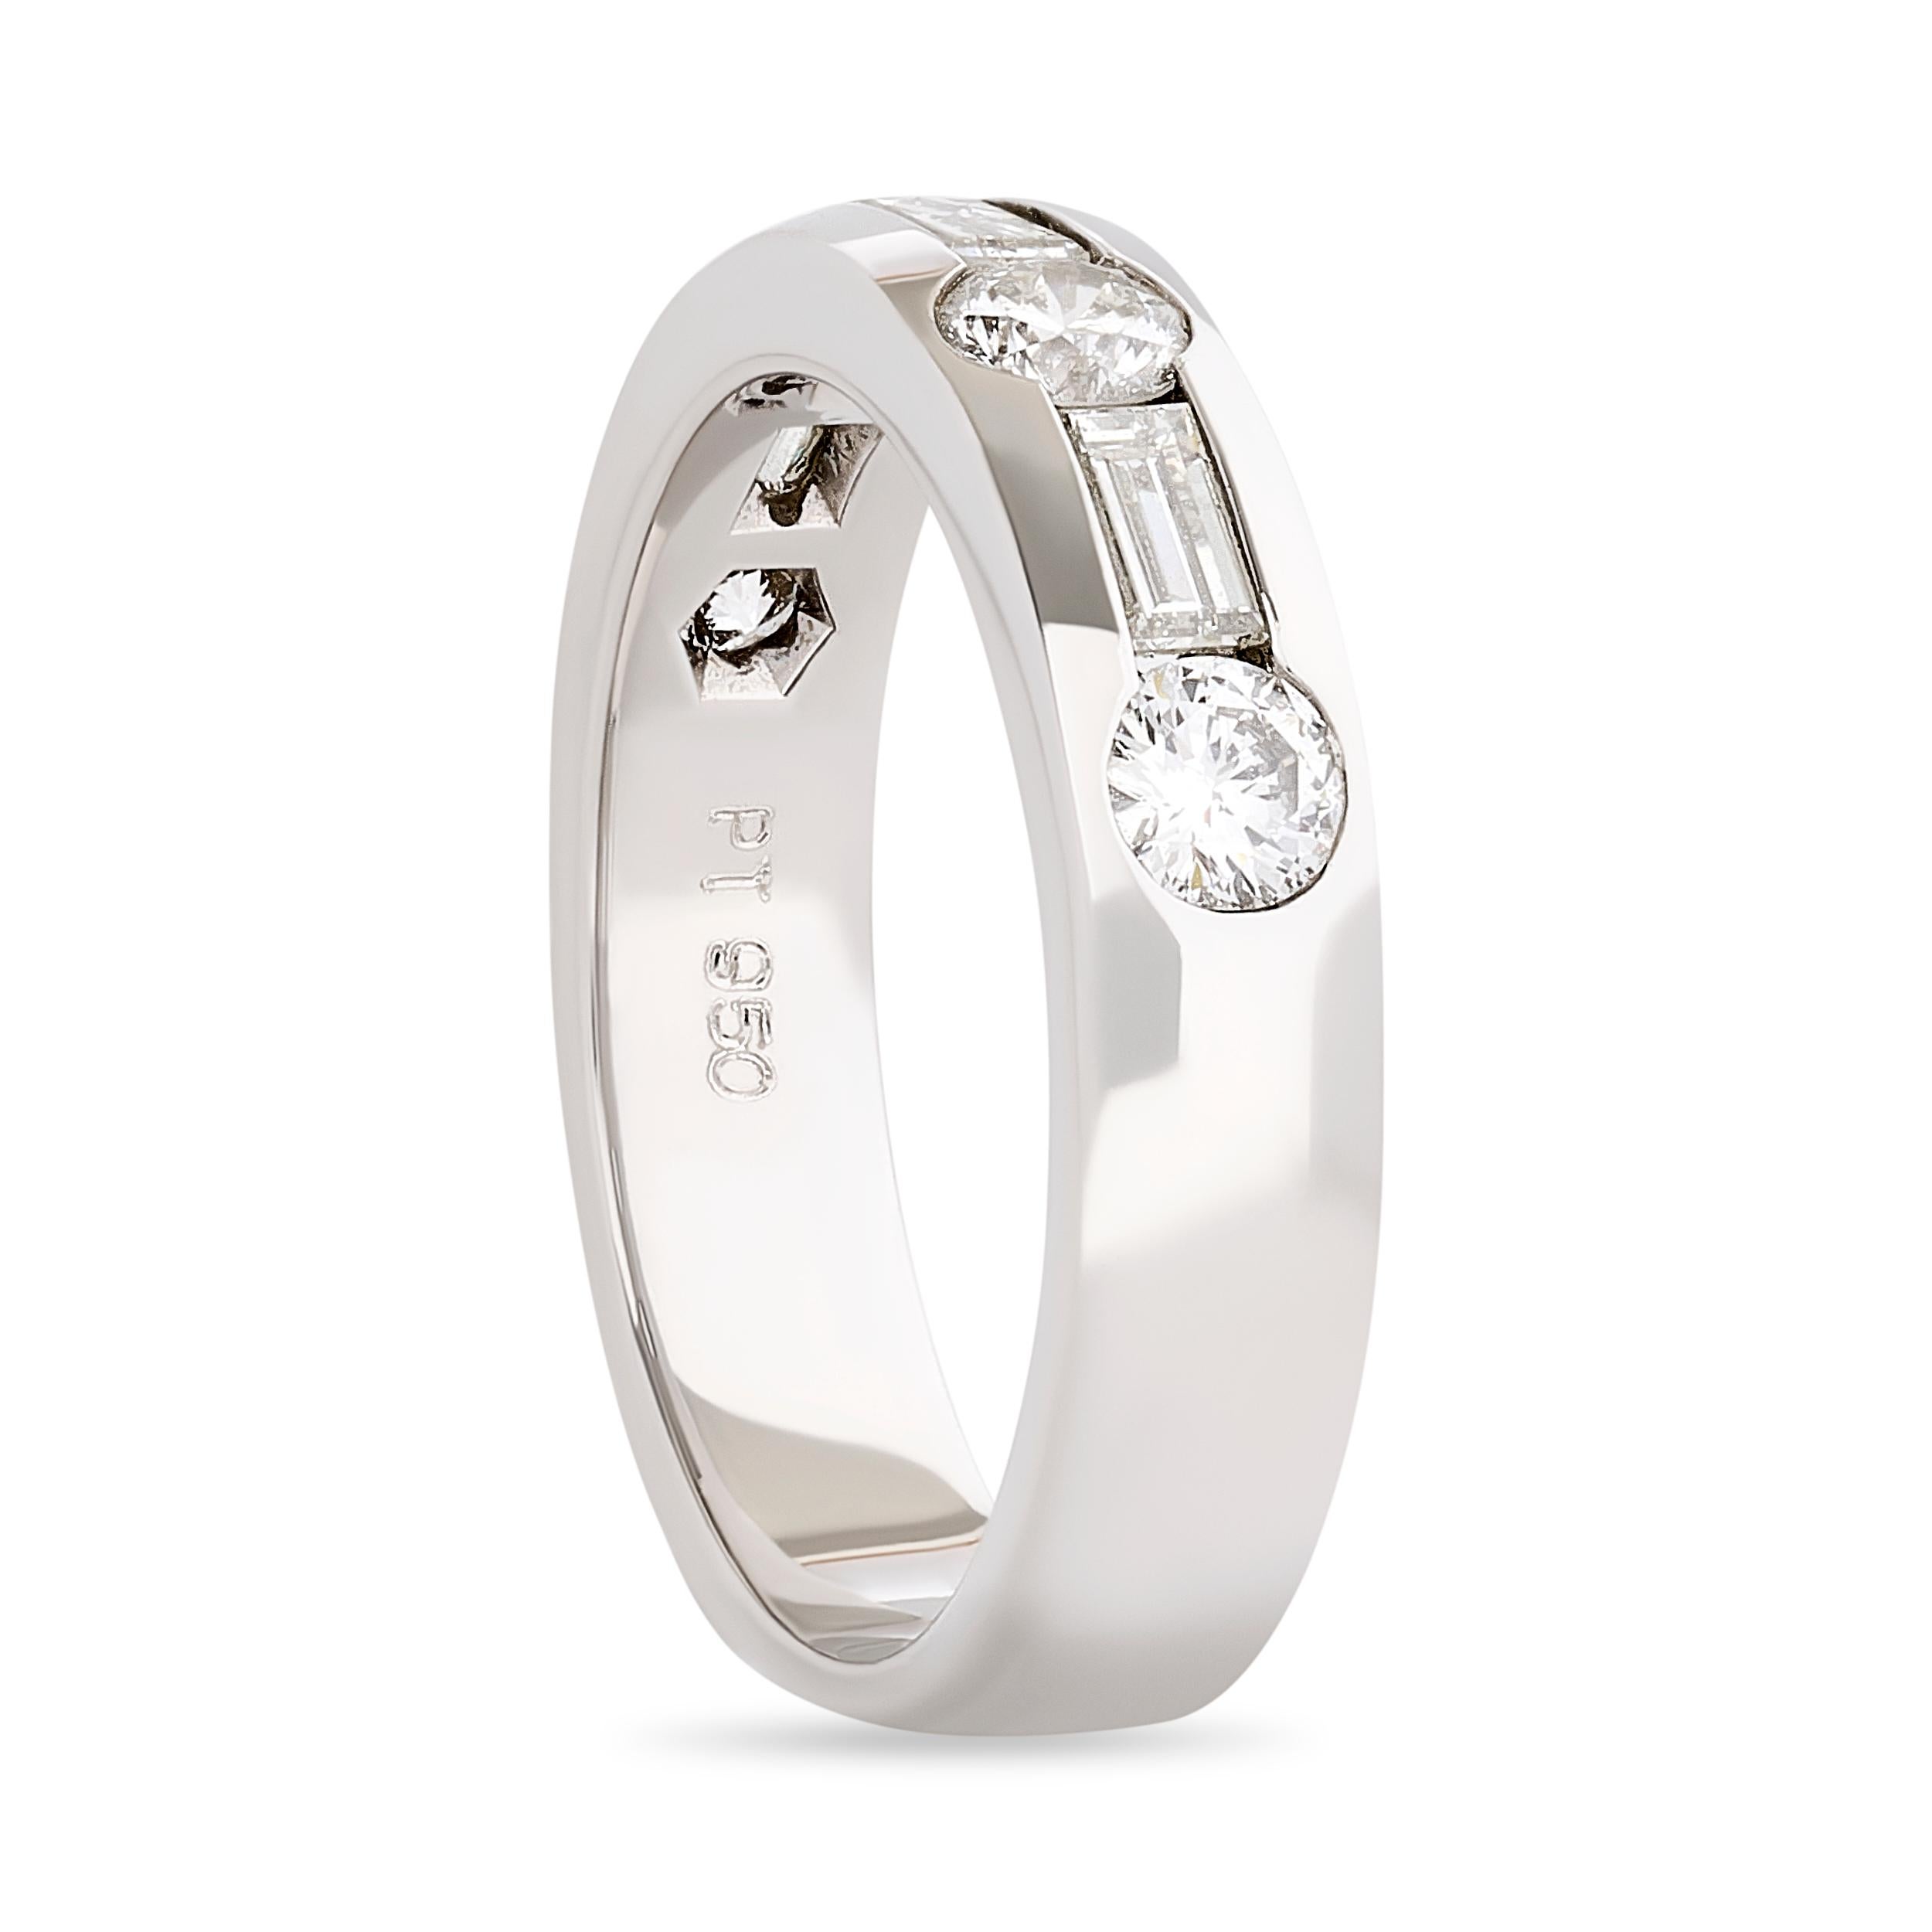 Setzen Sie ein Zeichen mit dem ultimativen Symbol für Luxus - dem Diamantband von Movado.

Bei diesem Movado-Diamantband wechseln sich 4 runde Diamanten im Brillantschliff mit 3 Baguette-Diamanten ab. Insgesamt sind es etwa 1,00 Karat. Die Diamanten